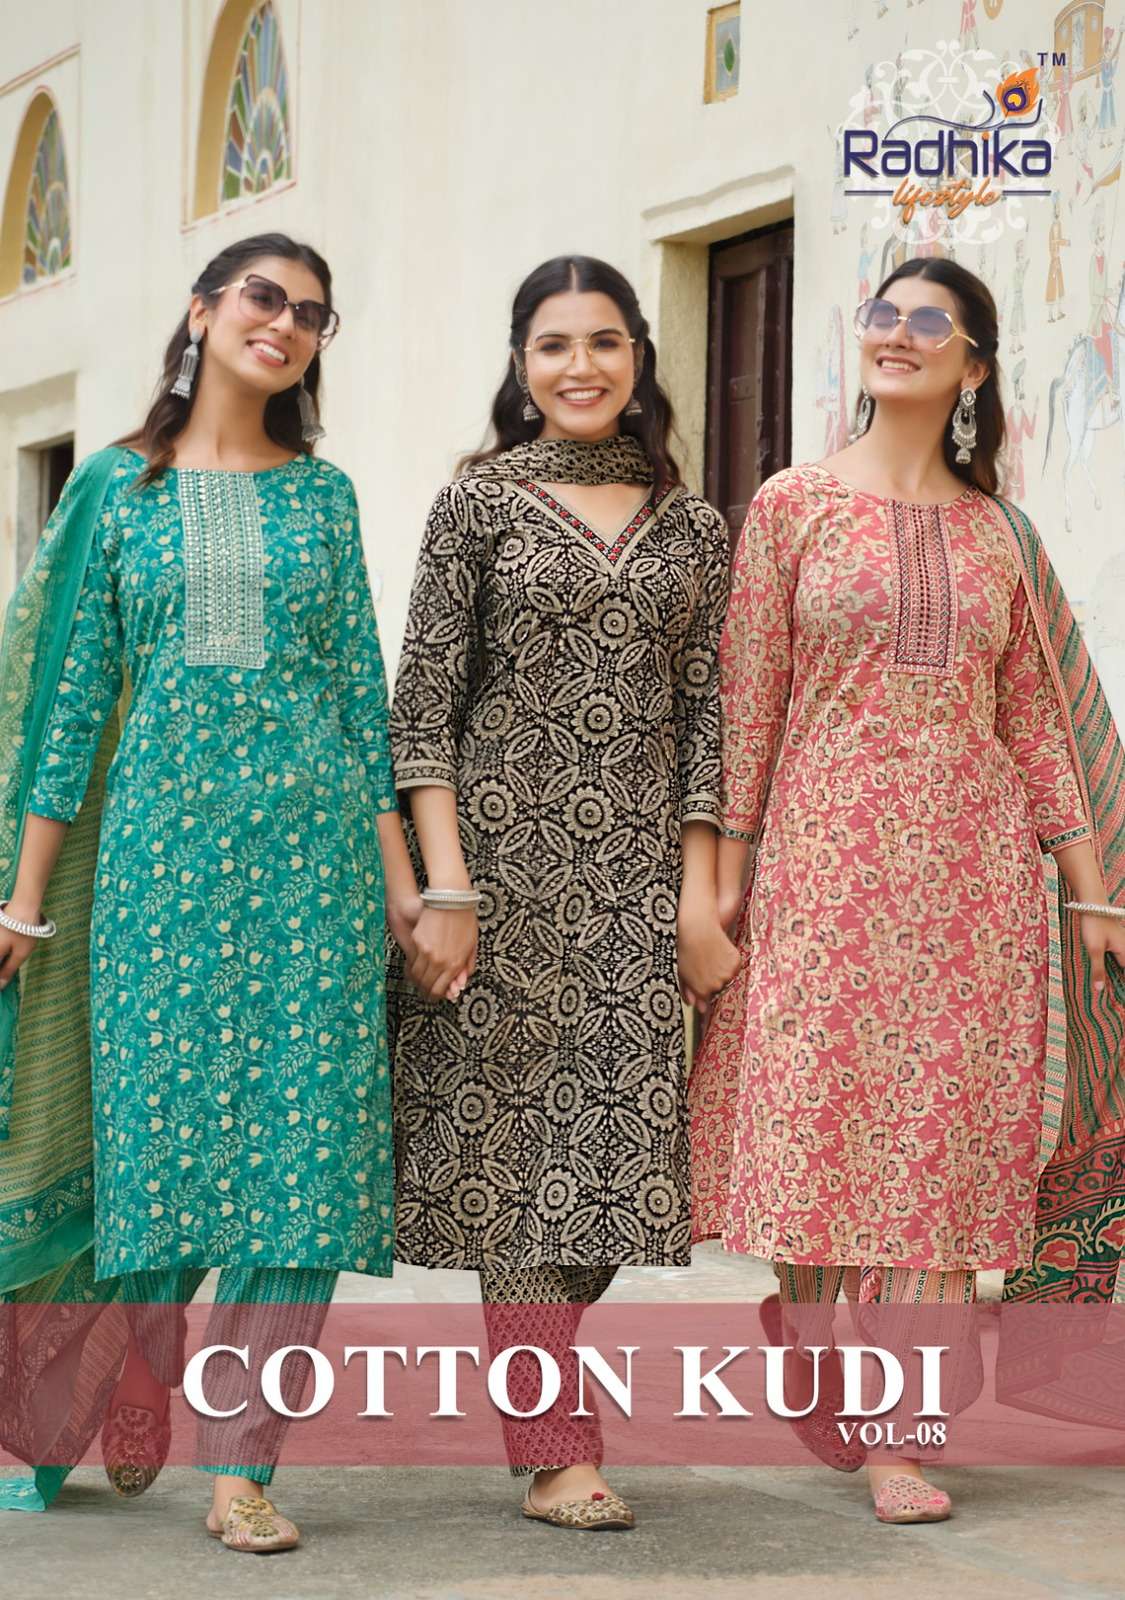 radhika cotton kudi vol-8 8001-8006 series designer cotton kurti set wholesaler surat gujarat